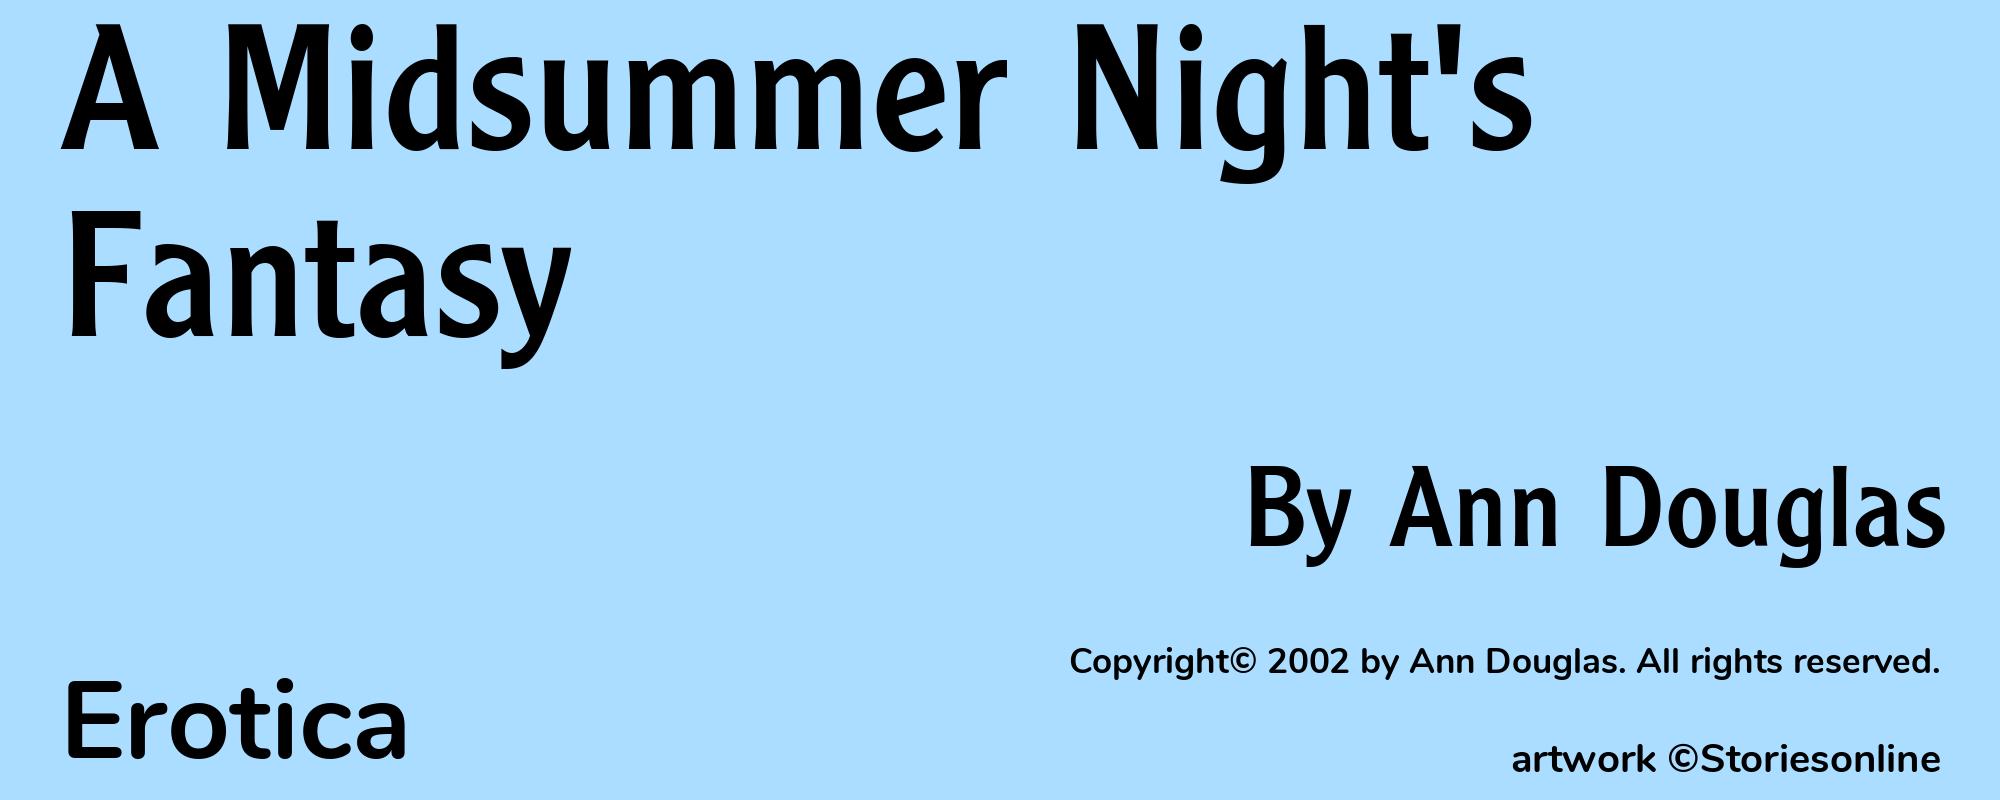 A Midsummer Night's Fantasy - Cover